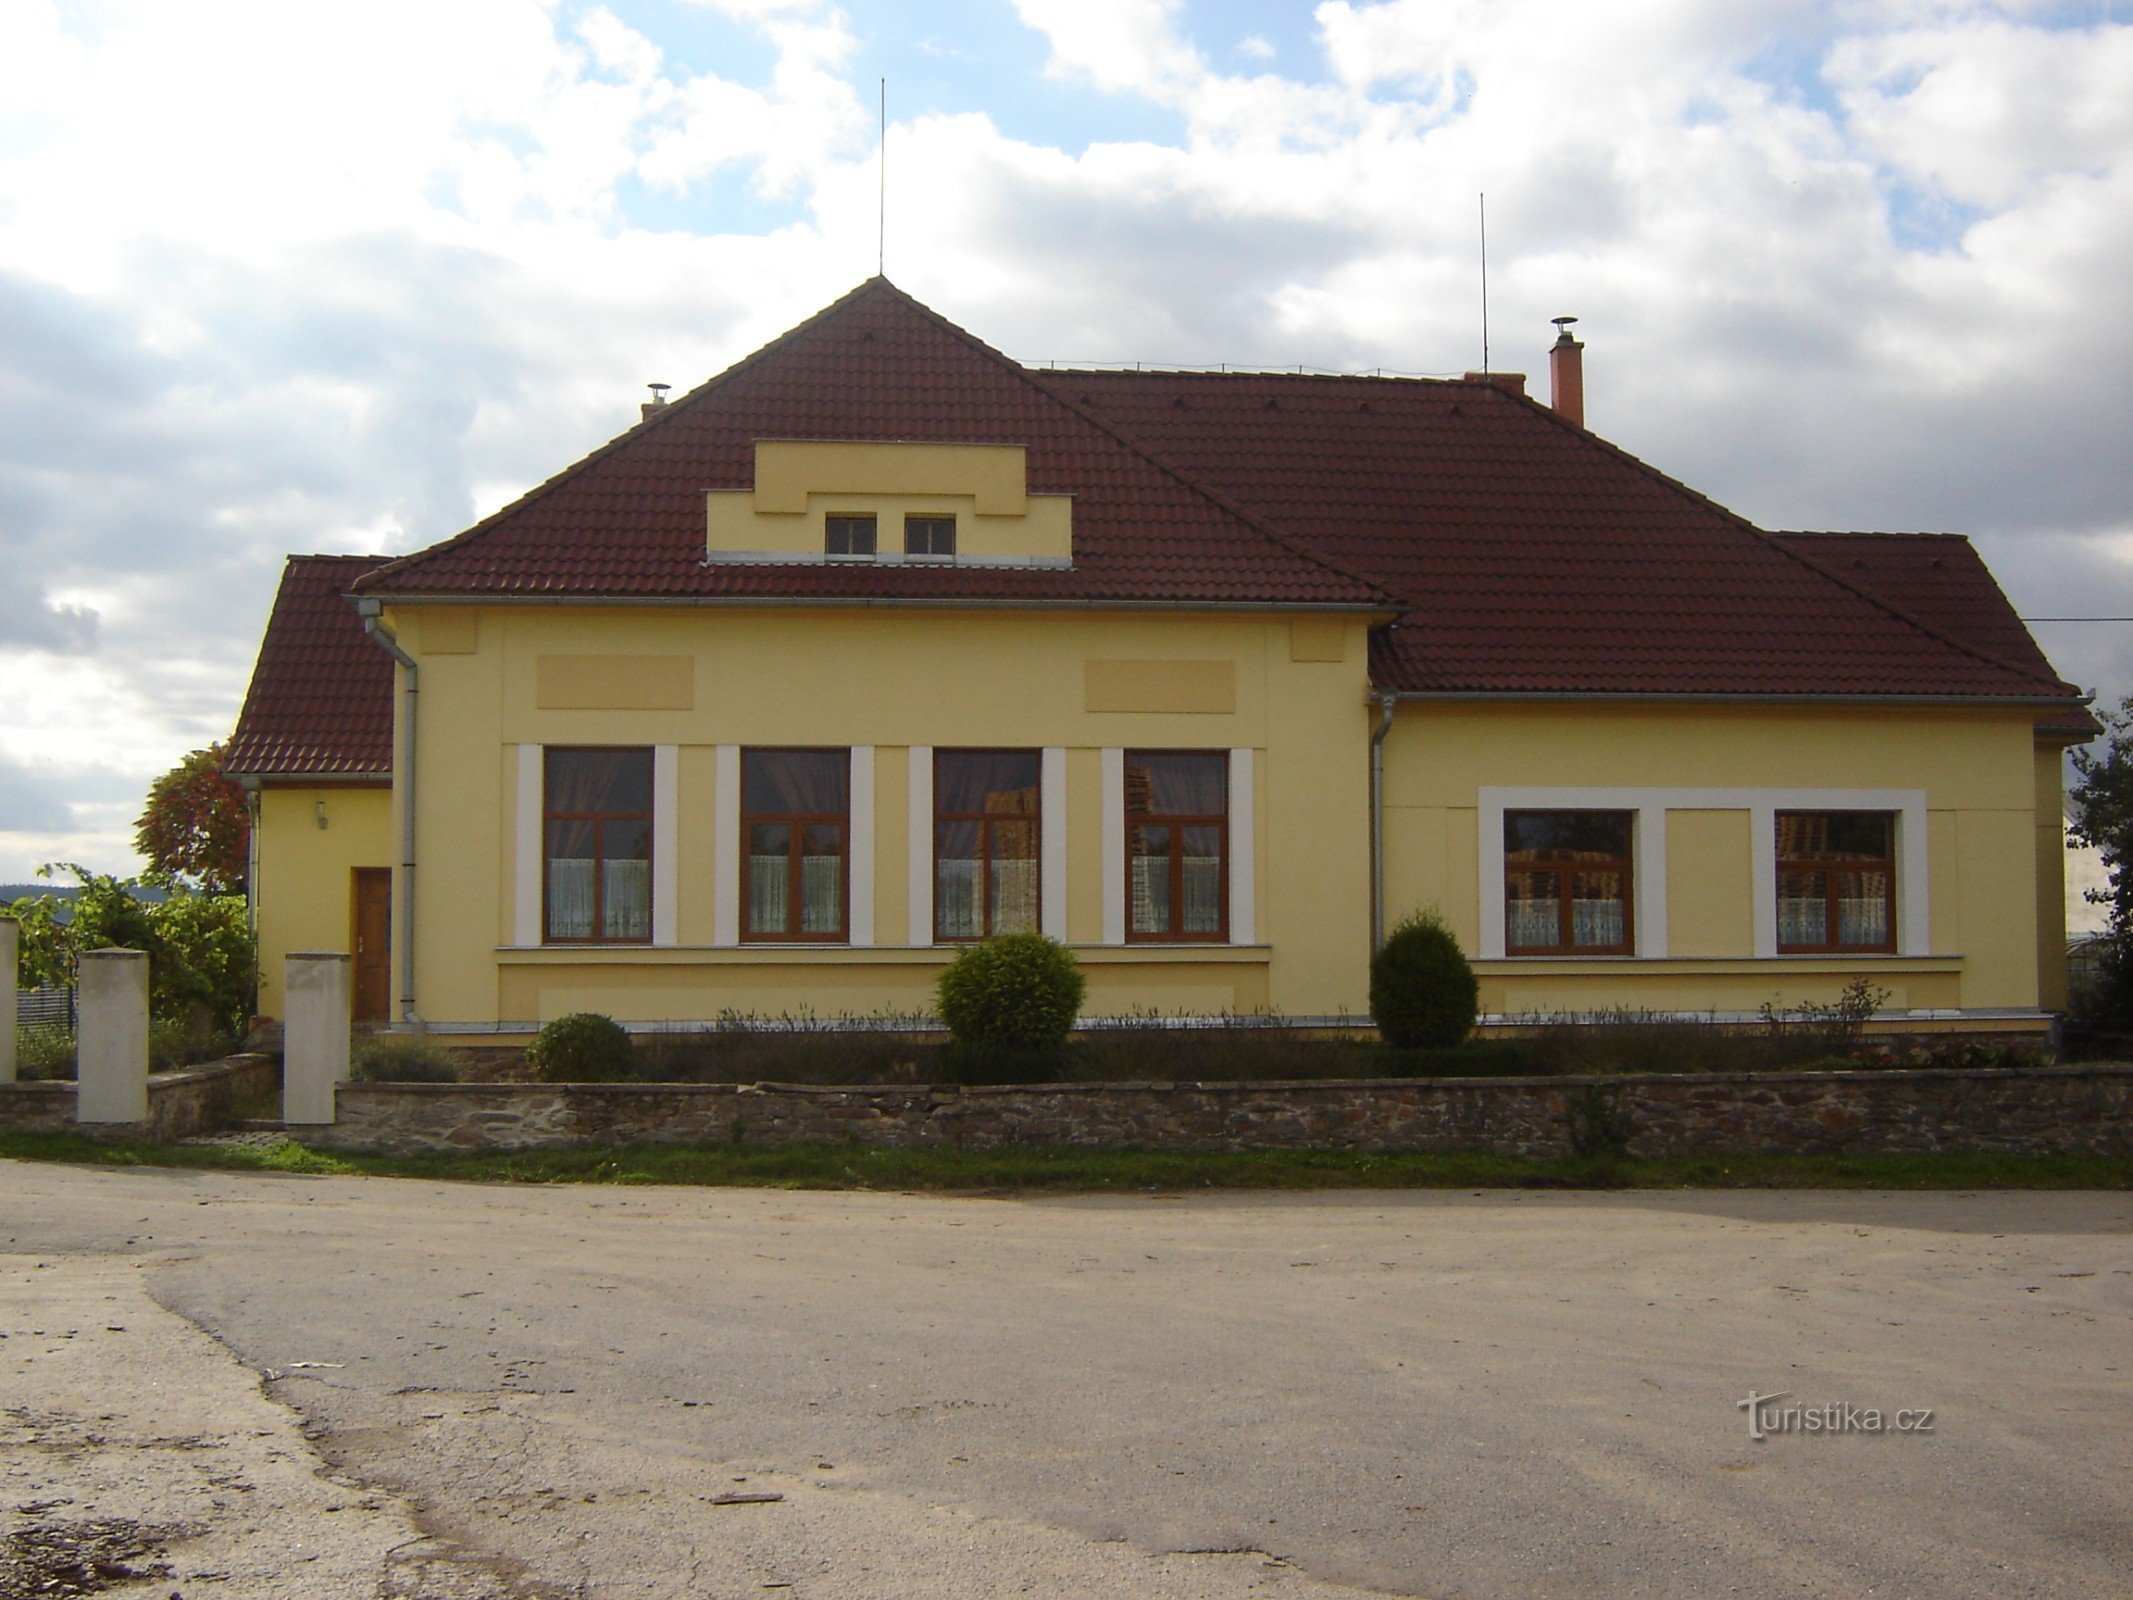 building of the former school - Haškovcova Lhota